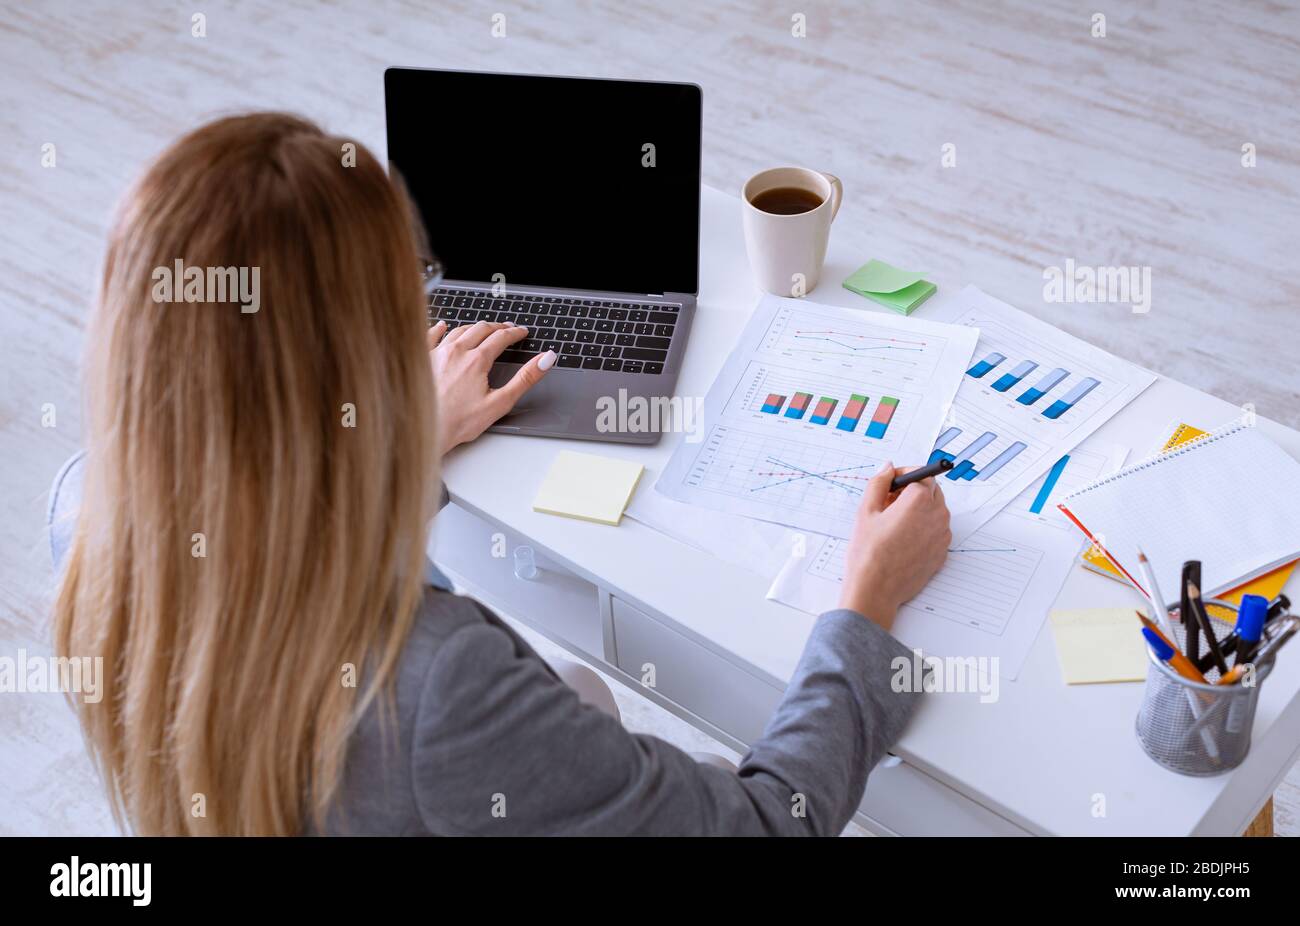 Femme travaille avec des documents, près d'un ordinateur portable avec écran vide Banque D'Images